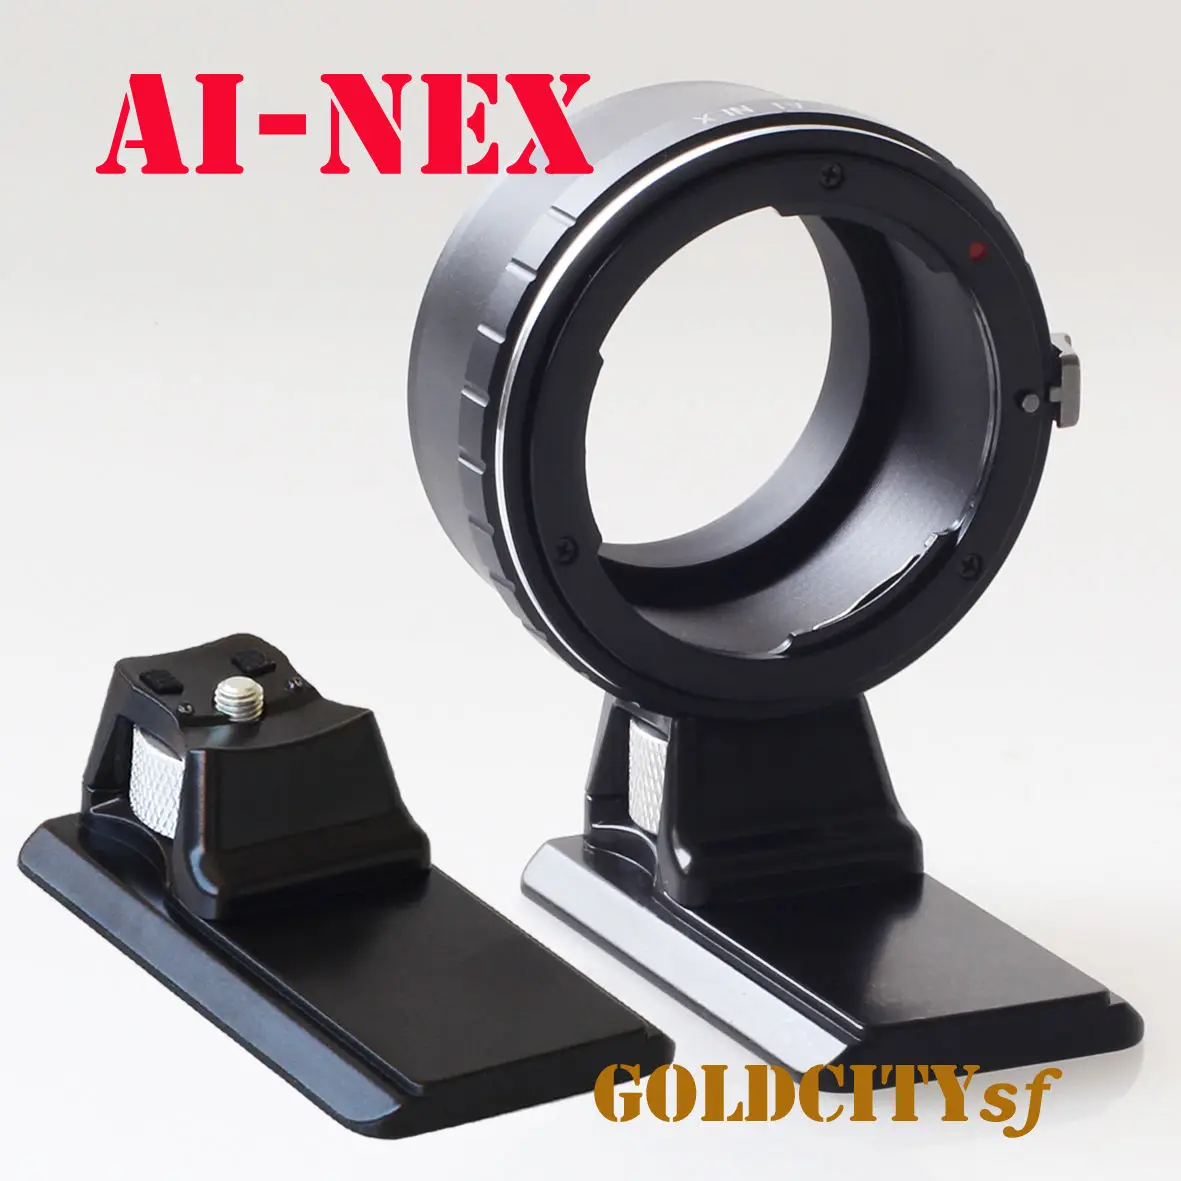 D/F/S de IA Lente de montura E nex anillo Adaptador con base de Trípode para NEX-3/C3/5/5N/6/7 A7, A7r A5100 A7s A5000 A6500 cámara 1